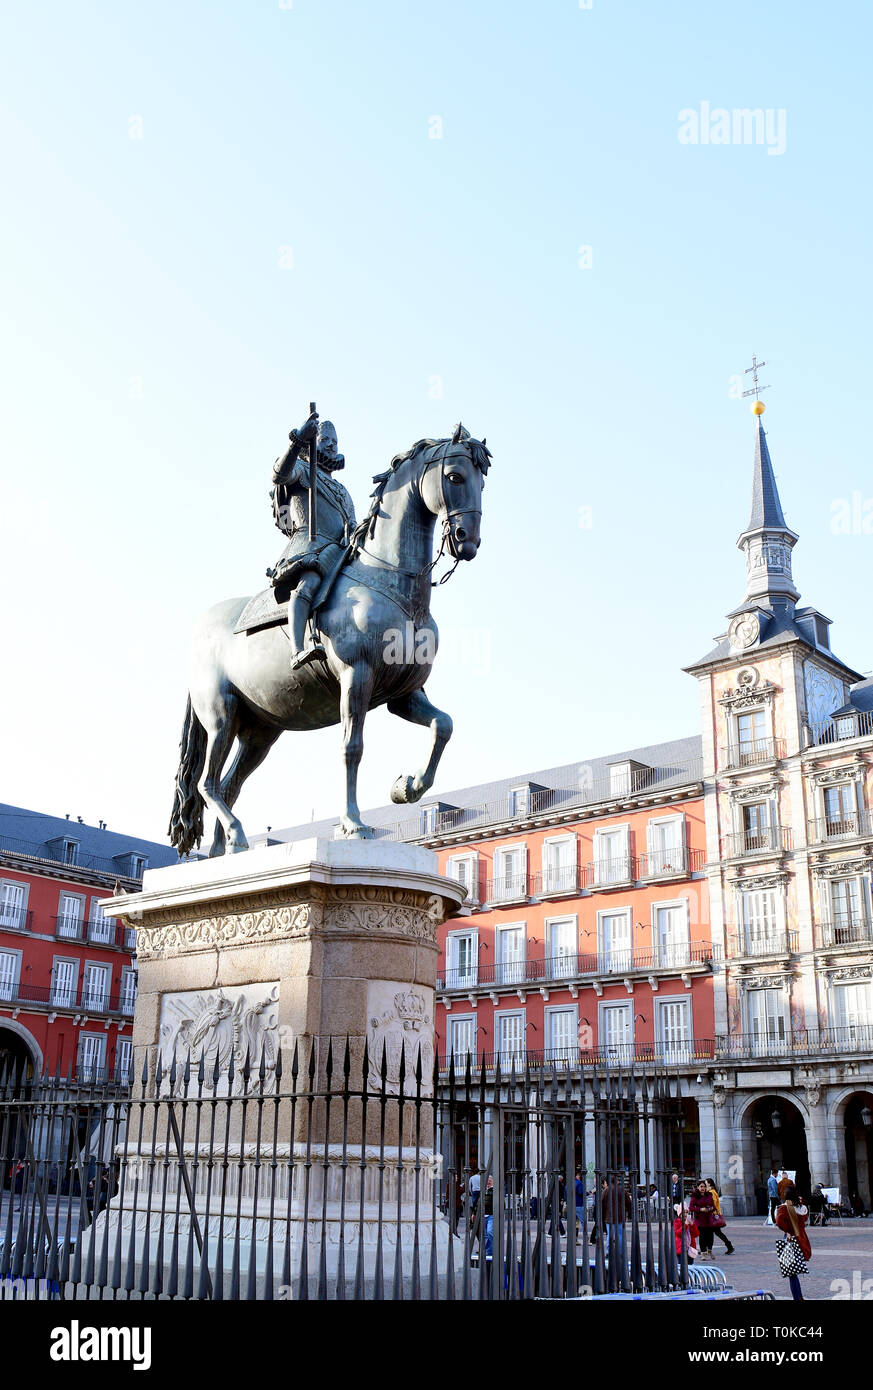 MADRID - Spanien - Feb 19, 2019: Das Felipe III Statue, Madrid steht in der Mitte der Plaza Mayor zeigt König Philipp III. von Spanien triumphierend Reiten sein Stockfoto